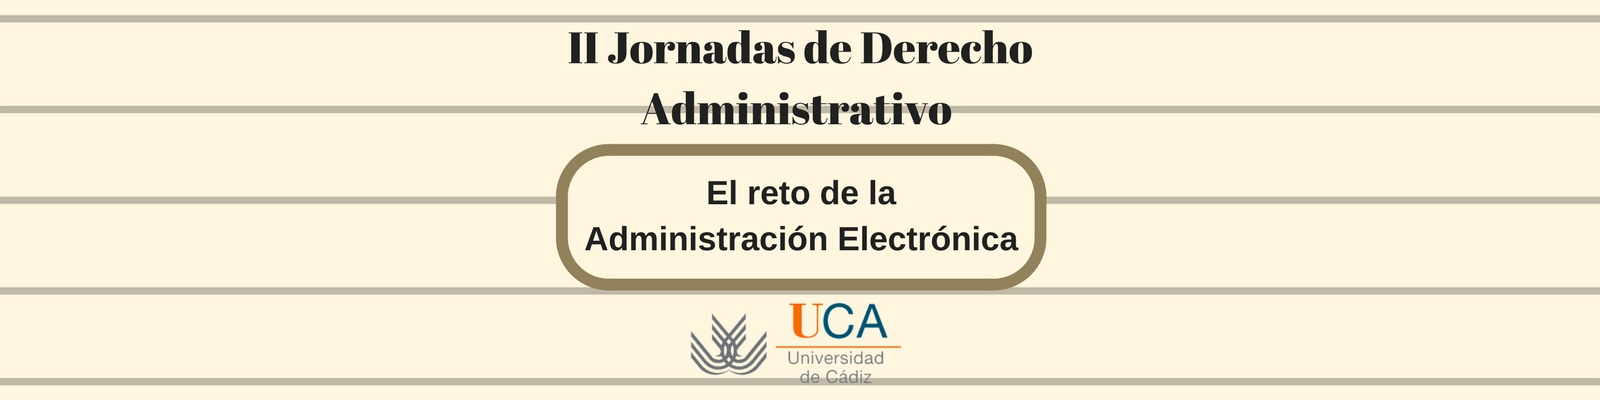 II Jornadas de Derecho Administrativo: "El reto de la Administración Electrónica"